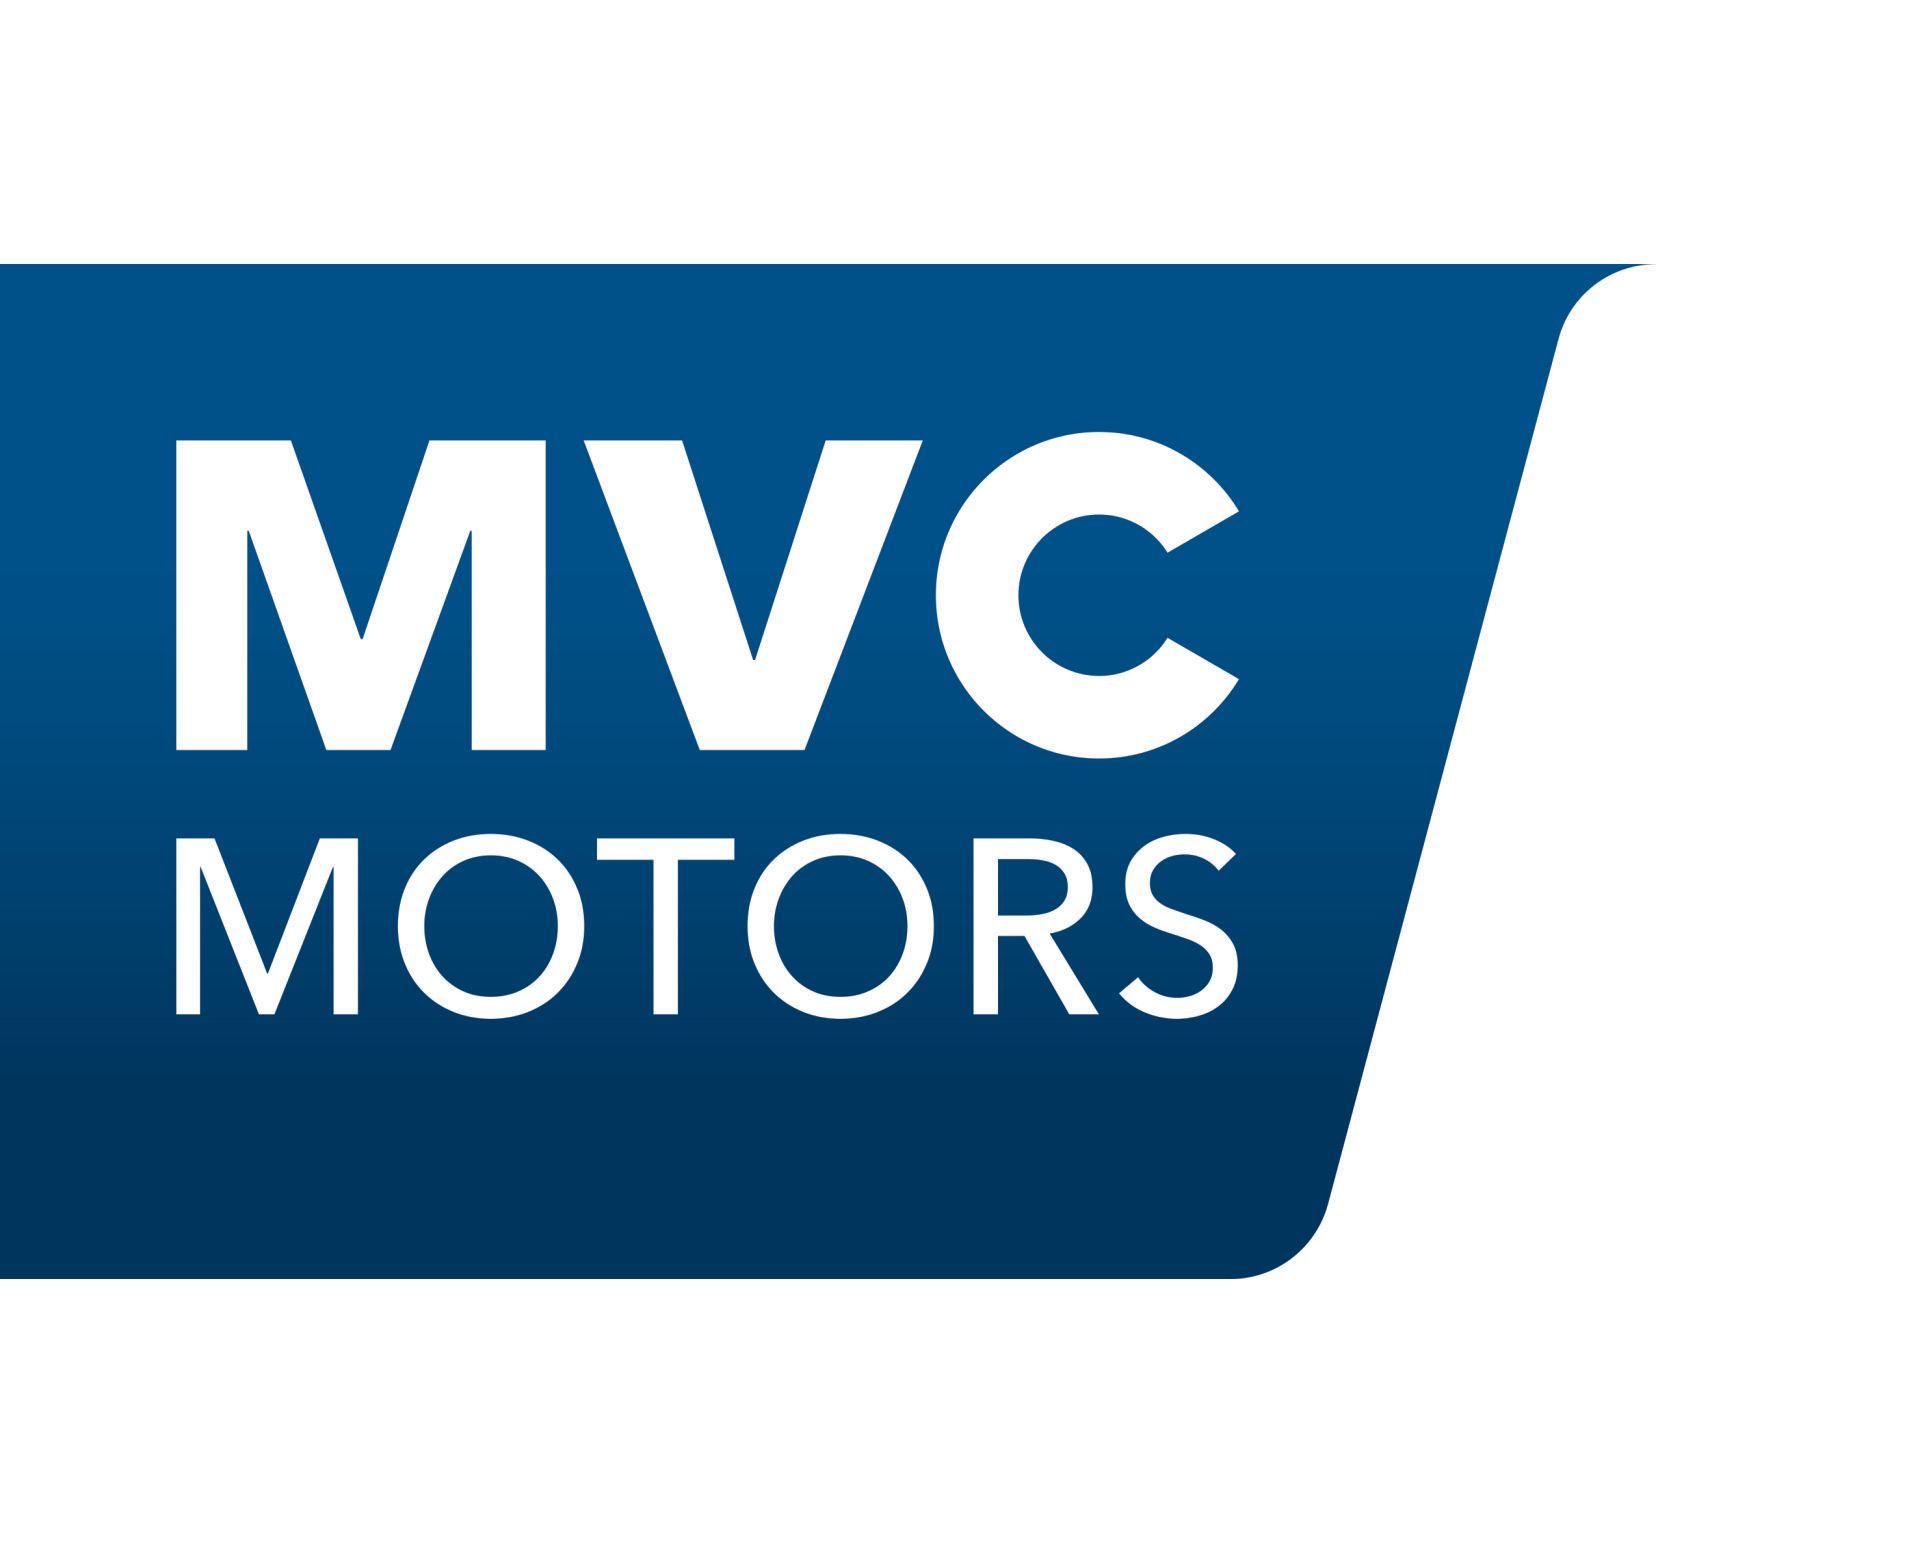 MVC Motors